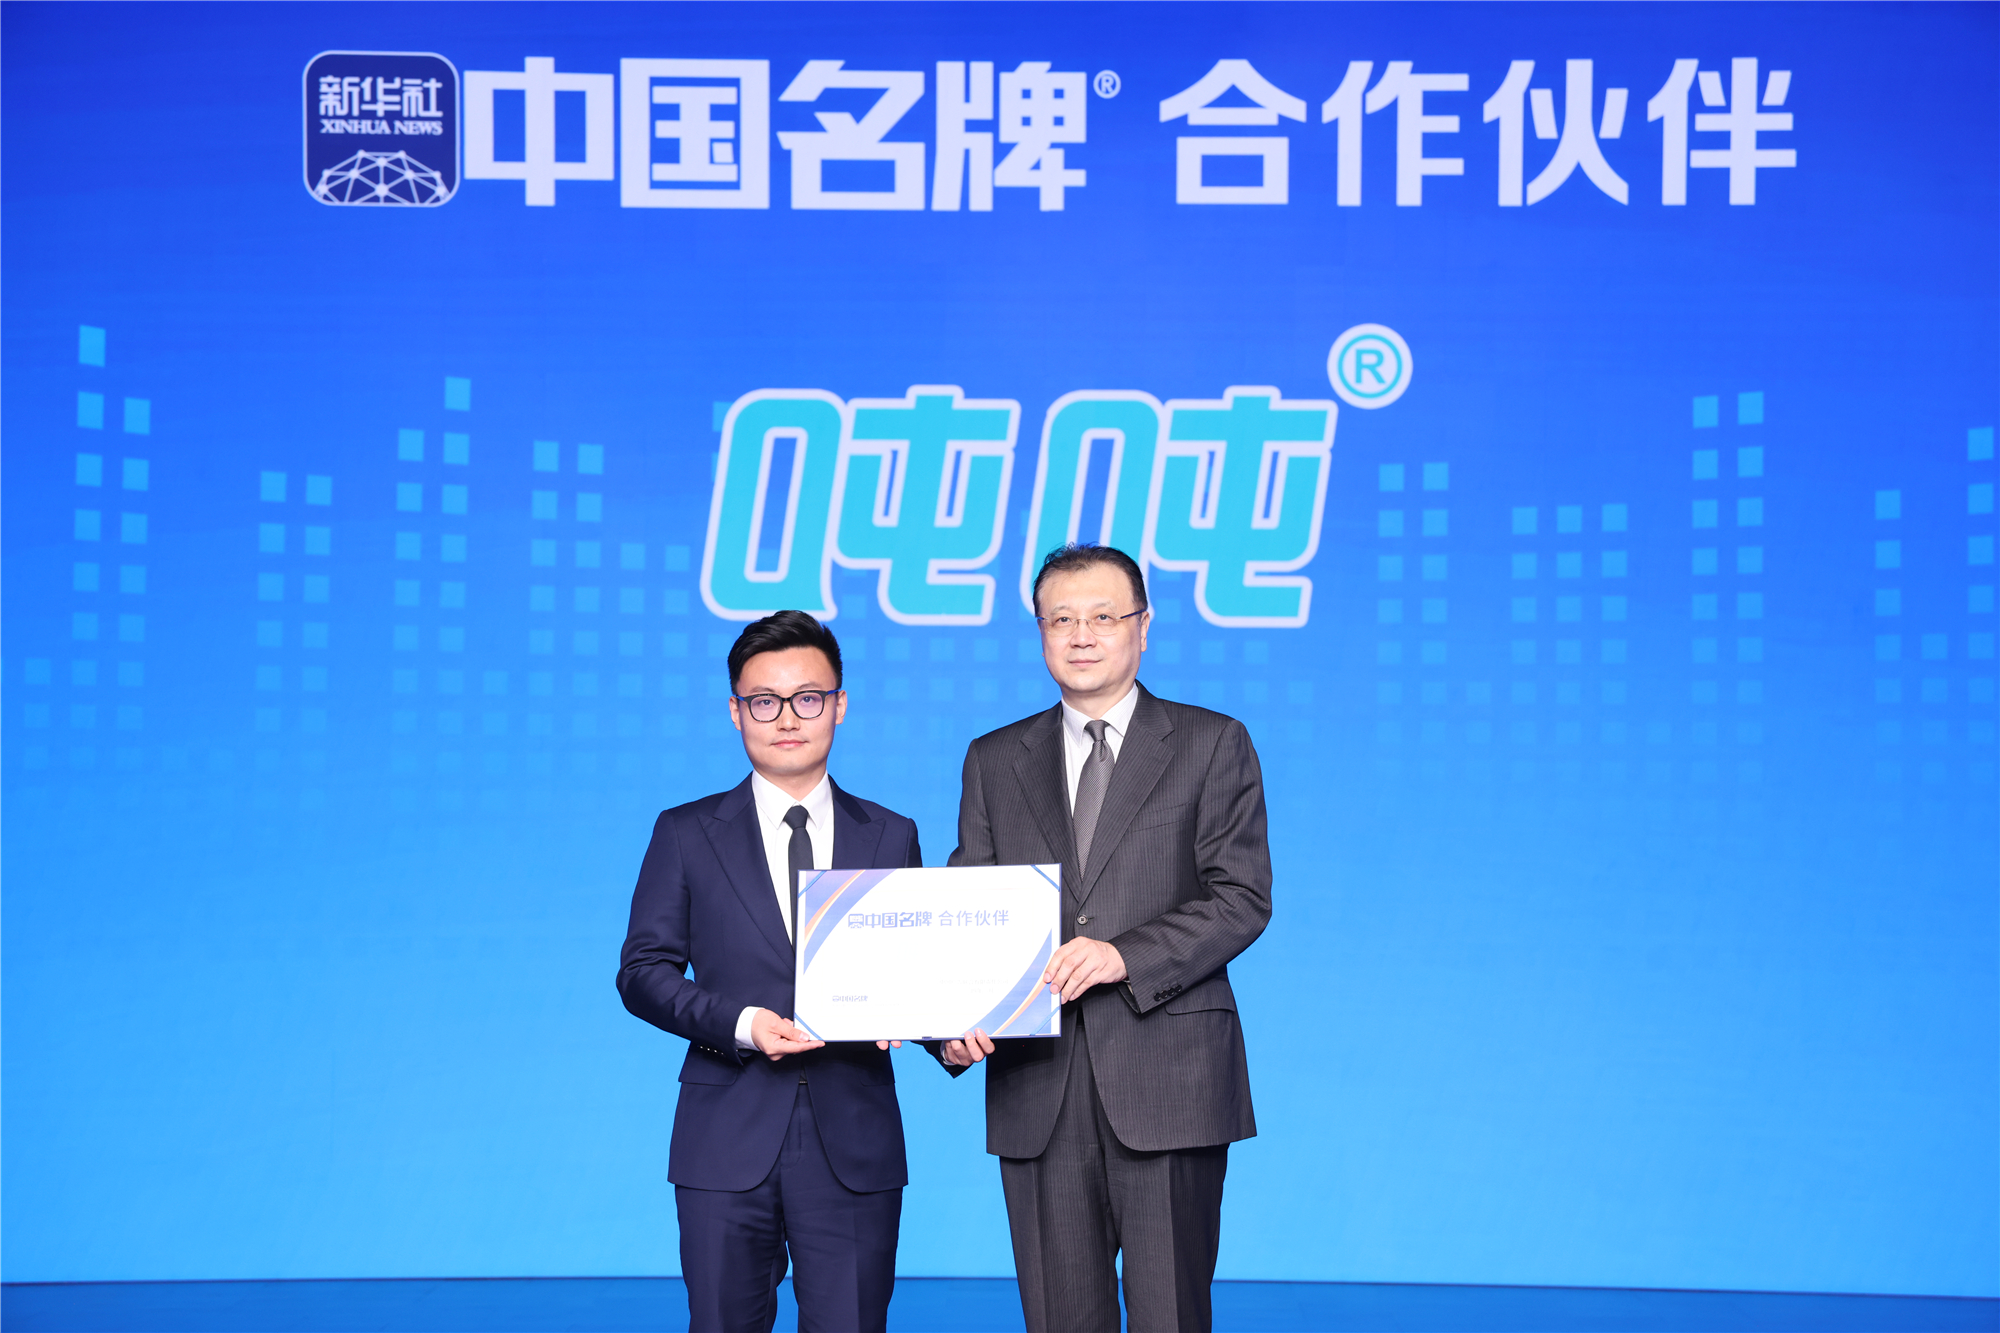 吨吨BOTTLEDJOY成为首批新华社“中国名牌”专项服务合作伙伴